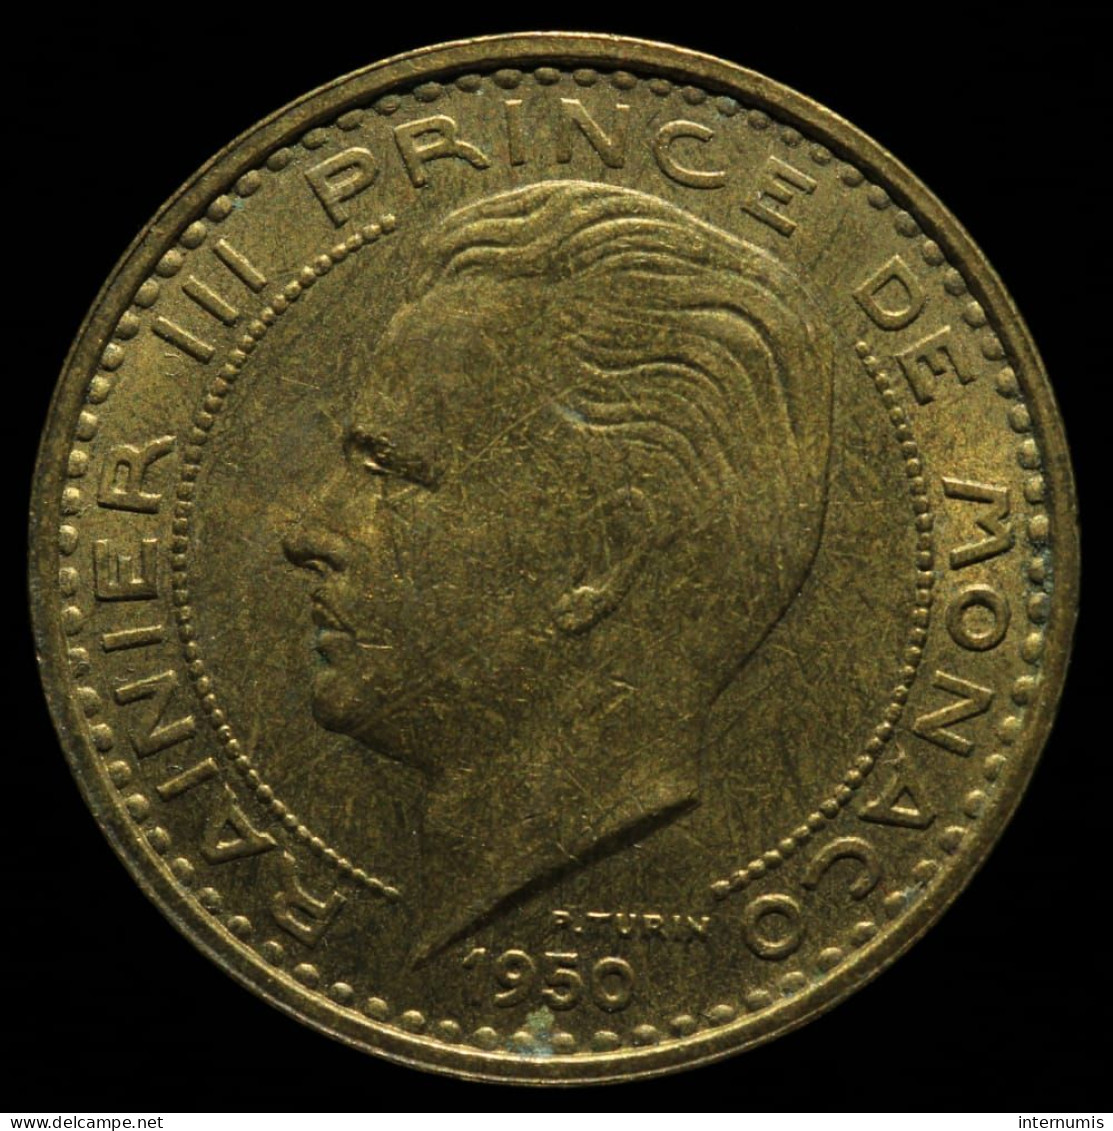 Monaco, Rainier III, 50 Francs, 1950, Cu-Al, NC (UNC), KM#132, G.MC141 - 1949-1956 Anciens Francs